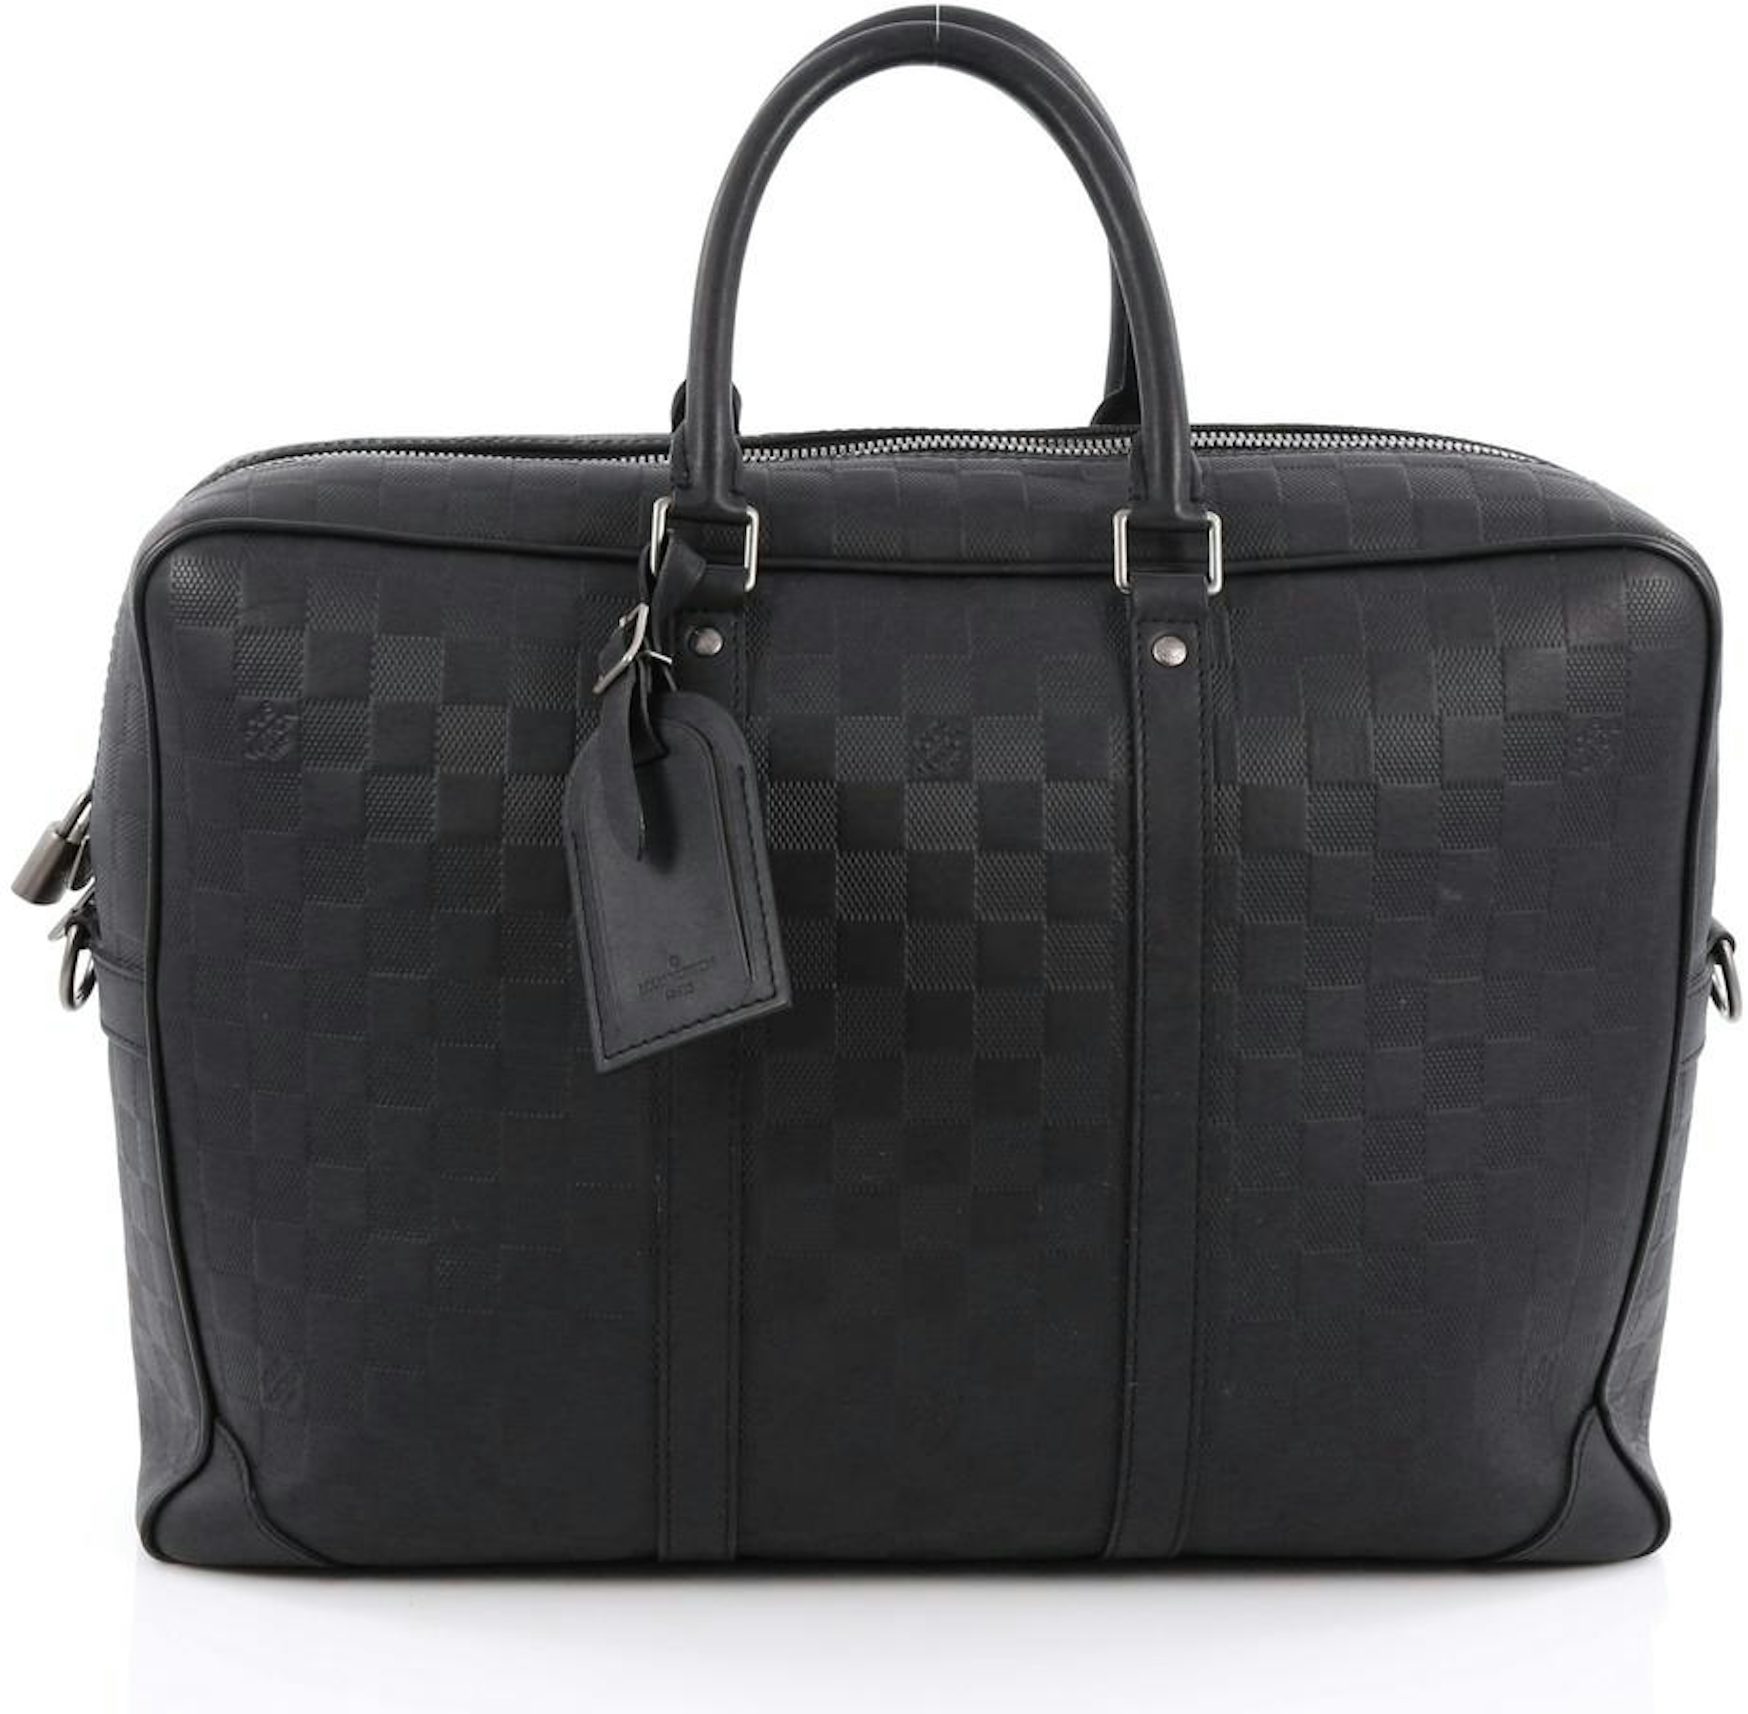 Louis Vuitton - Porte-Documents Voyage PMBriefcase - Leather - Onyx - Men - Luxury